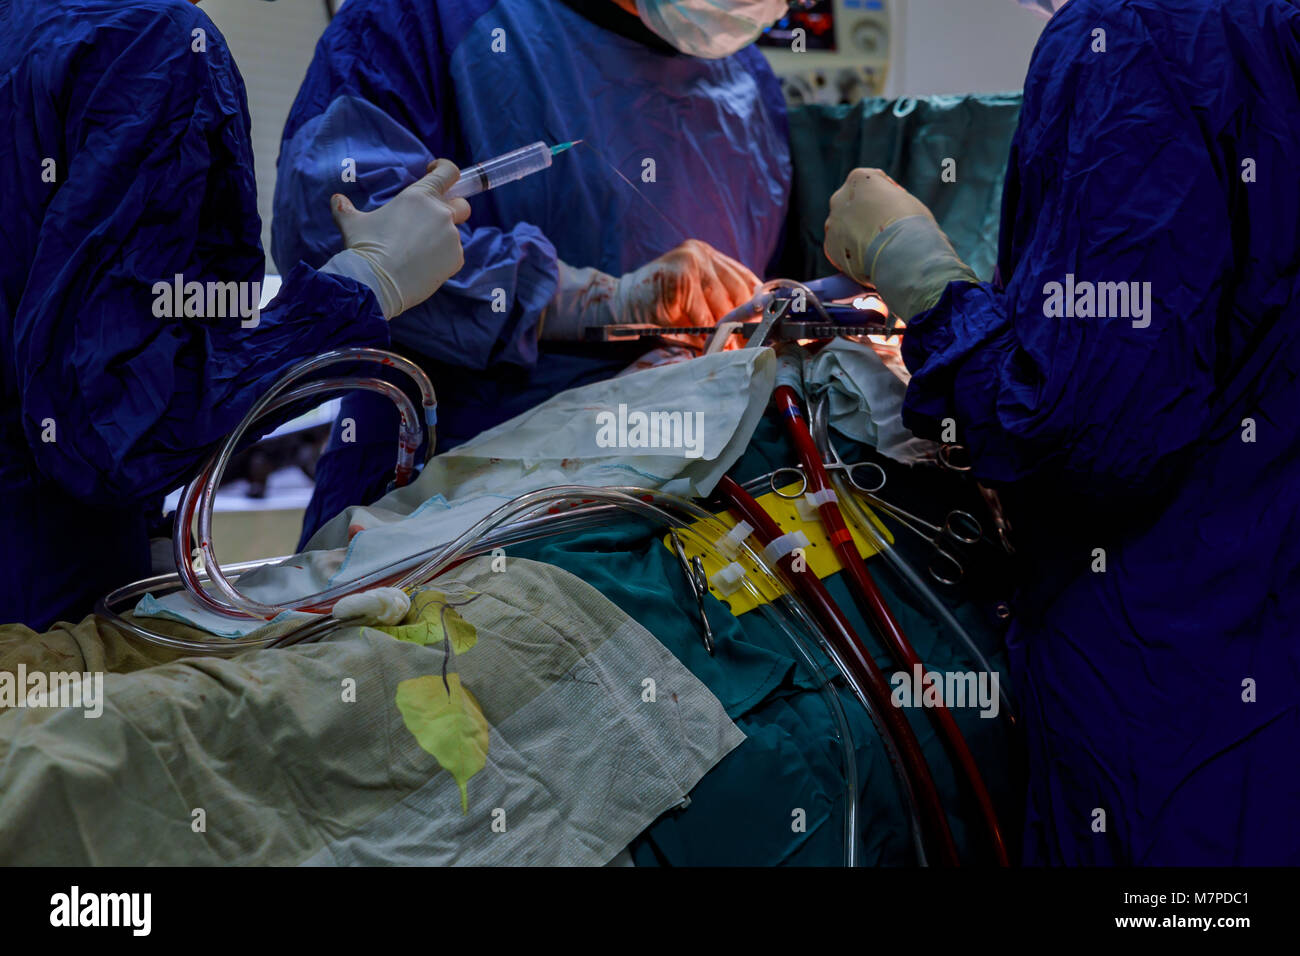 Offenes Herz Herz Bypass Chirurgie in Betrieb zimmer Ärzte Team Wear blue coat Herzchirurgie am Op durchführen Stockfoto